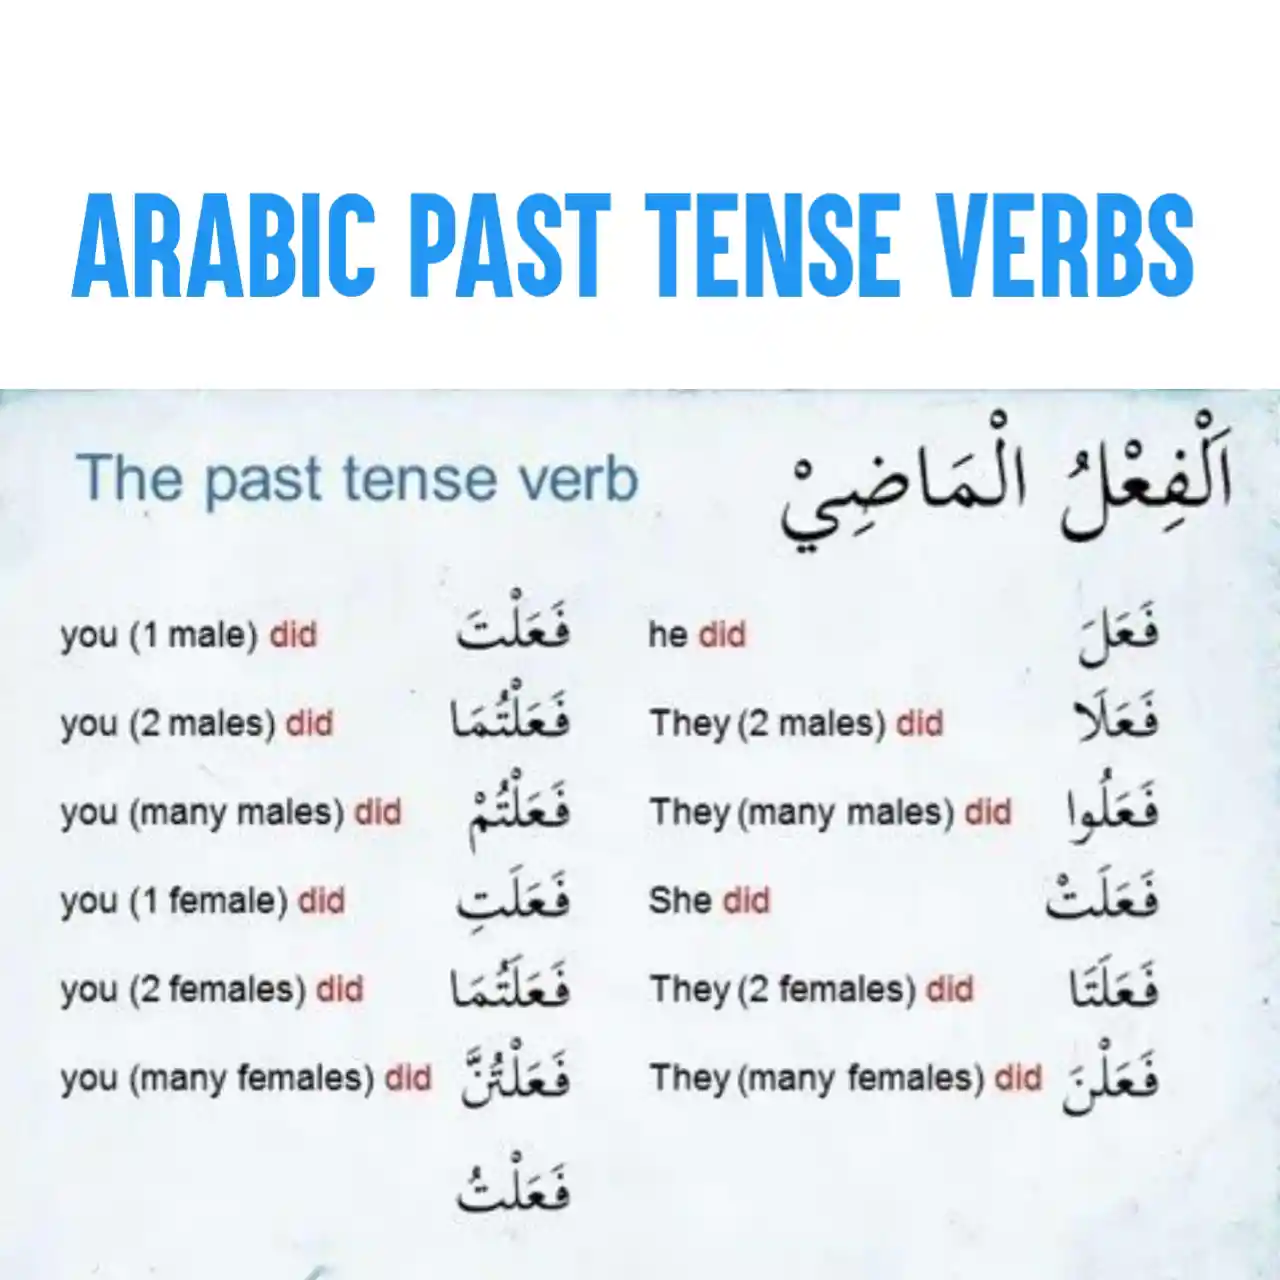 Arabic Past Tense